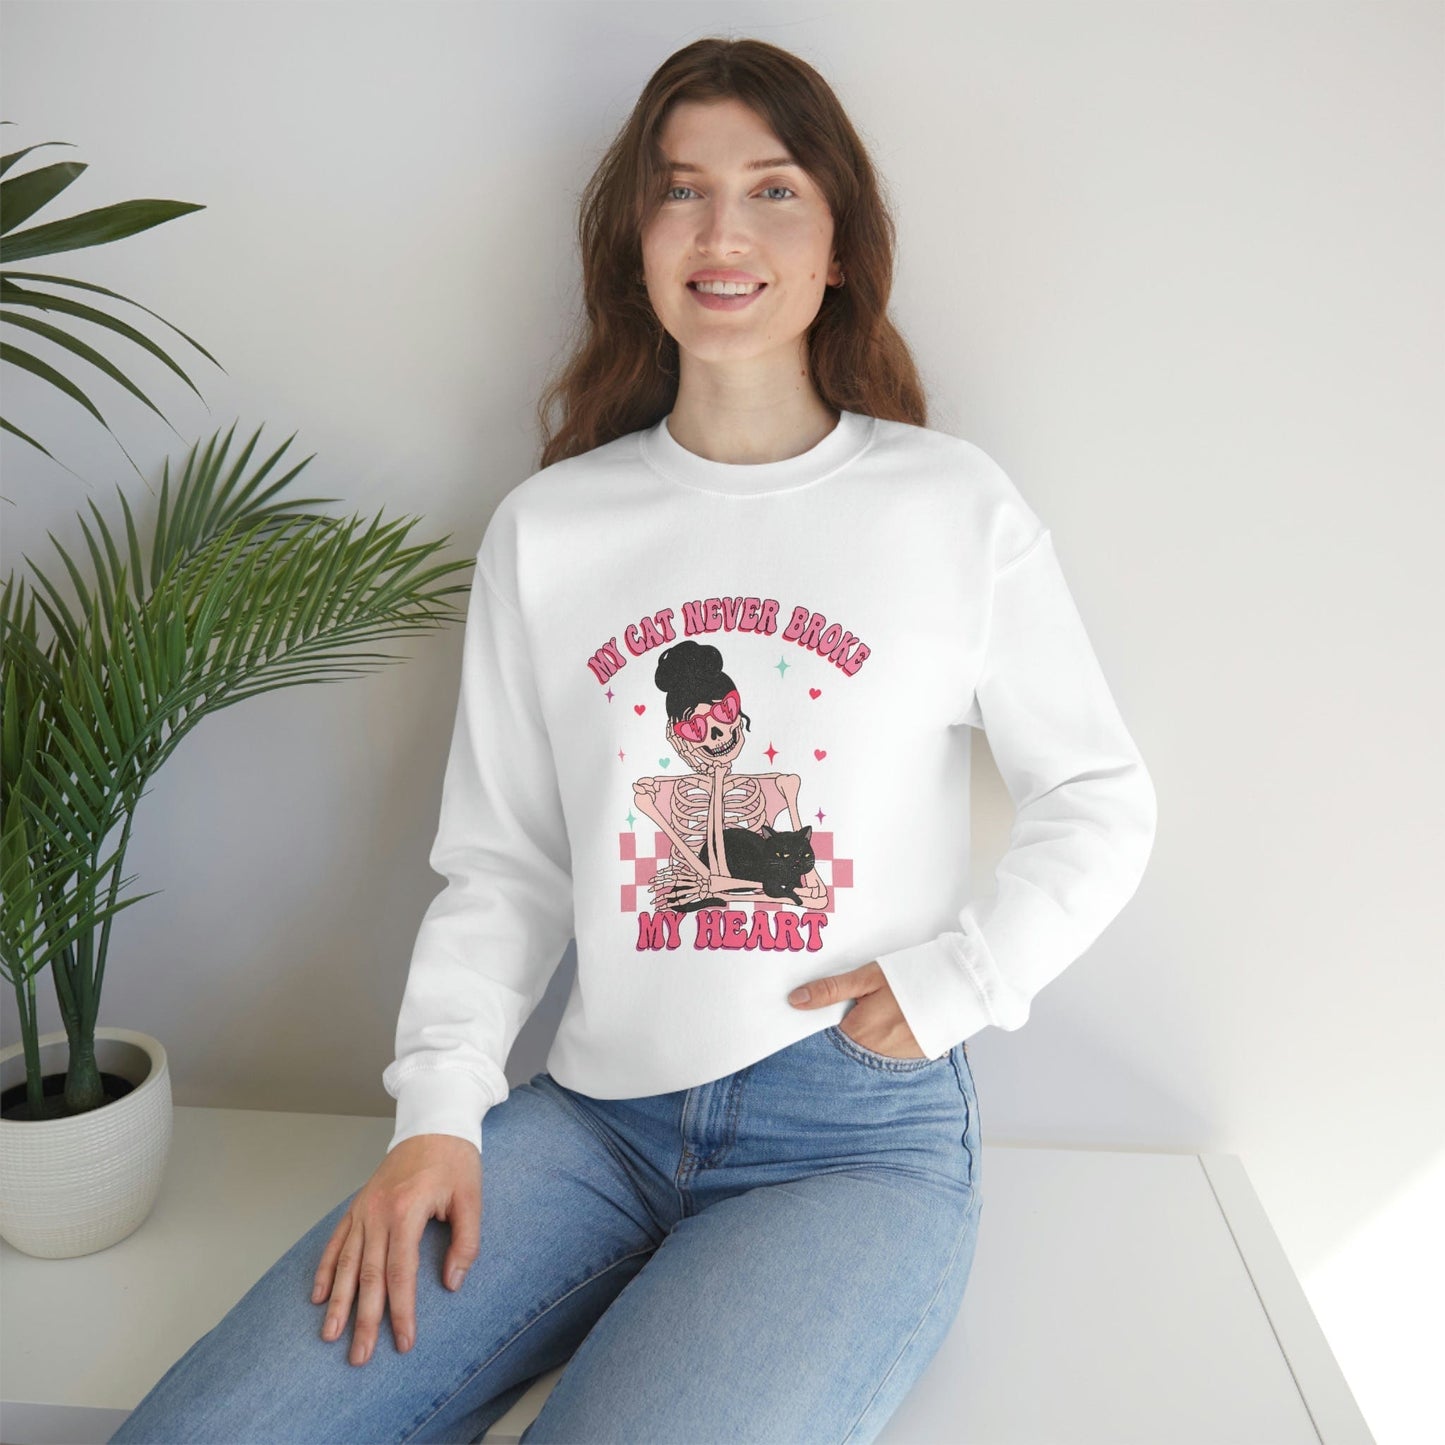 2023 Anti-Valentine's Day Sweatshirt: My Cat Never Broke My Heart